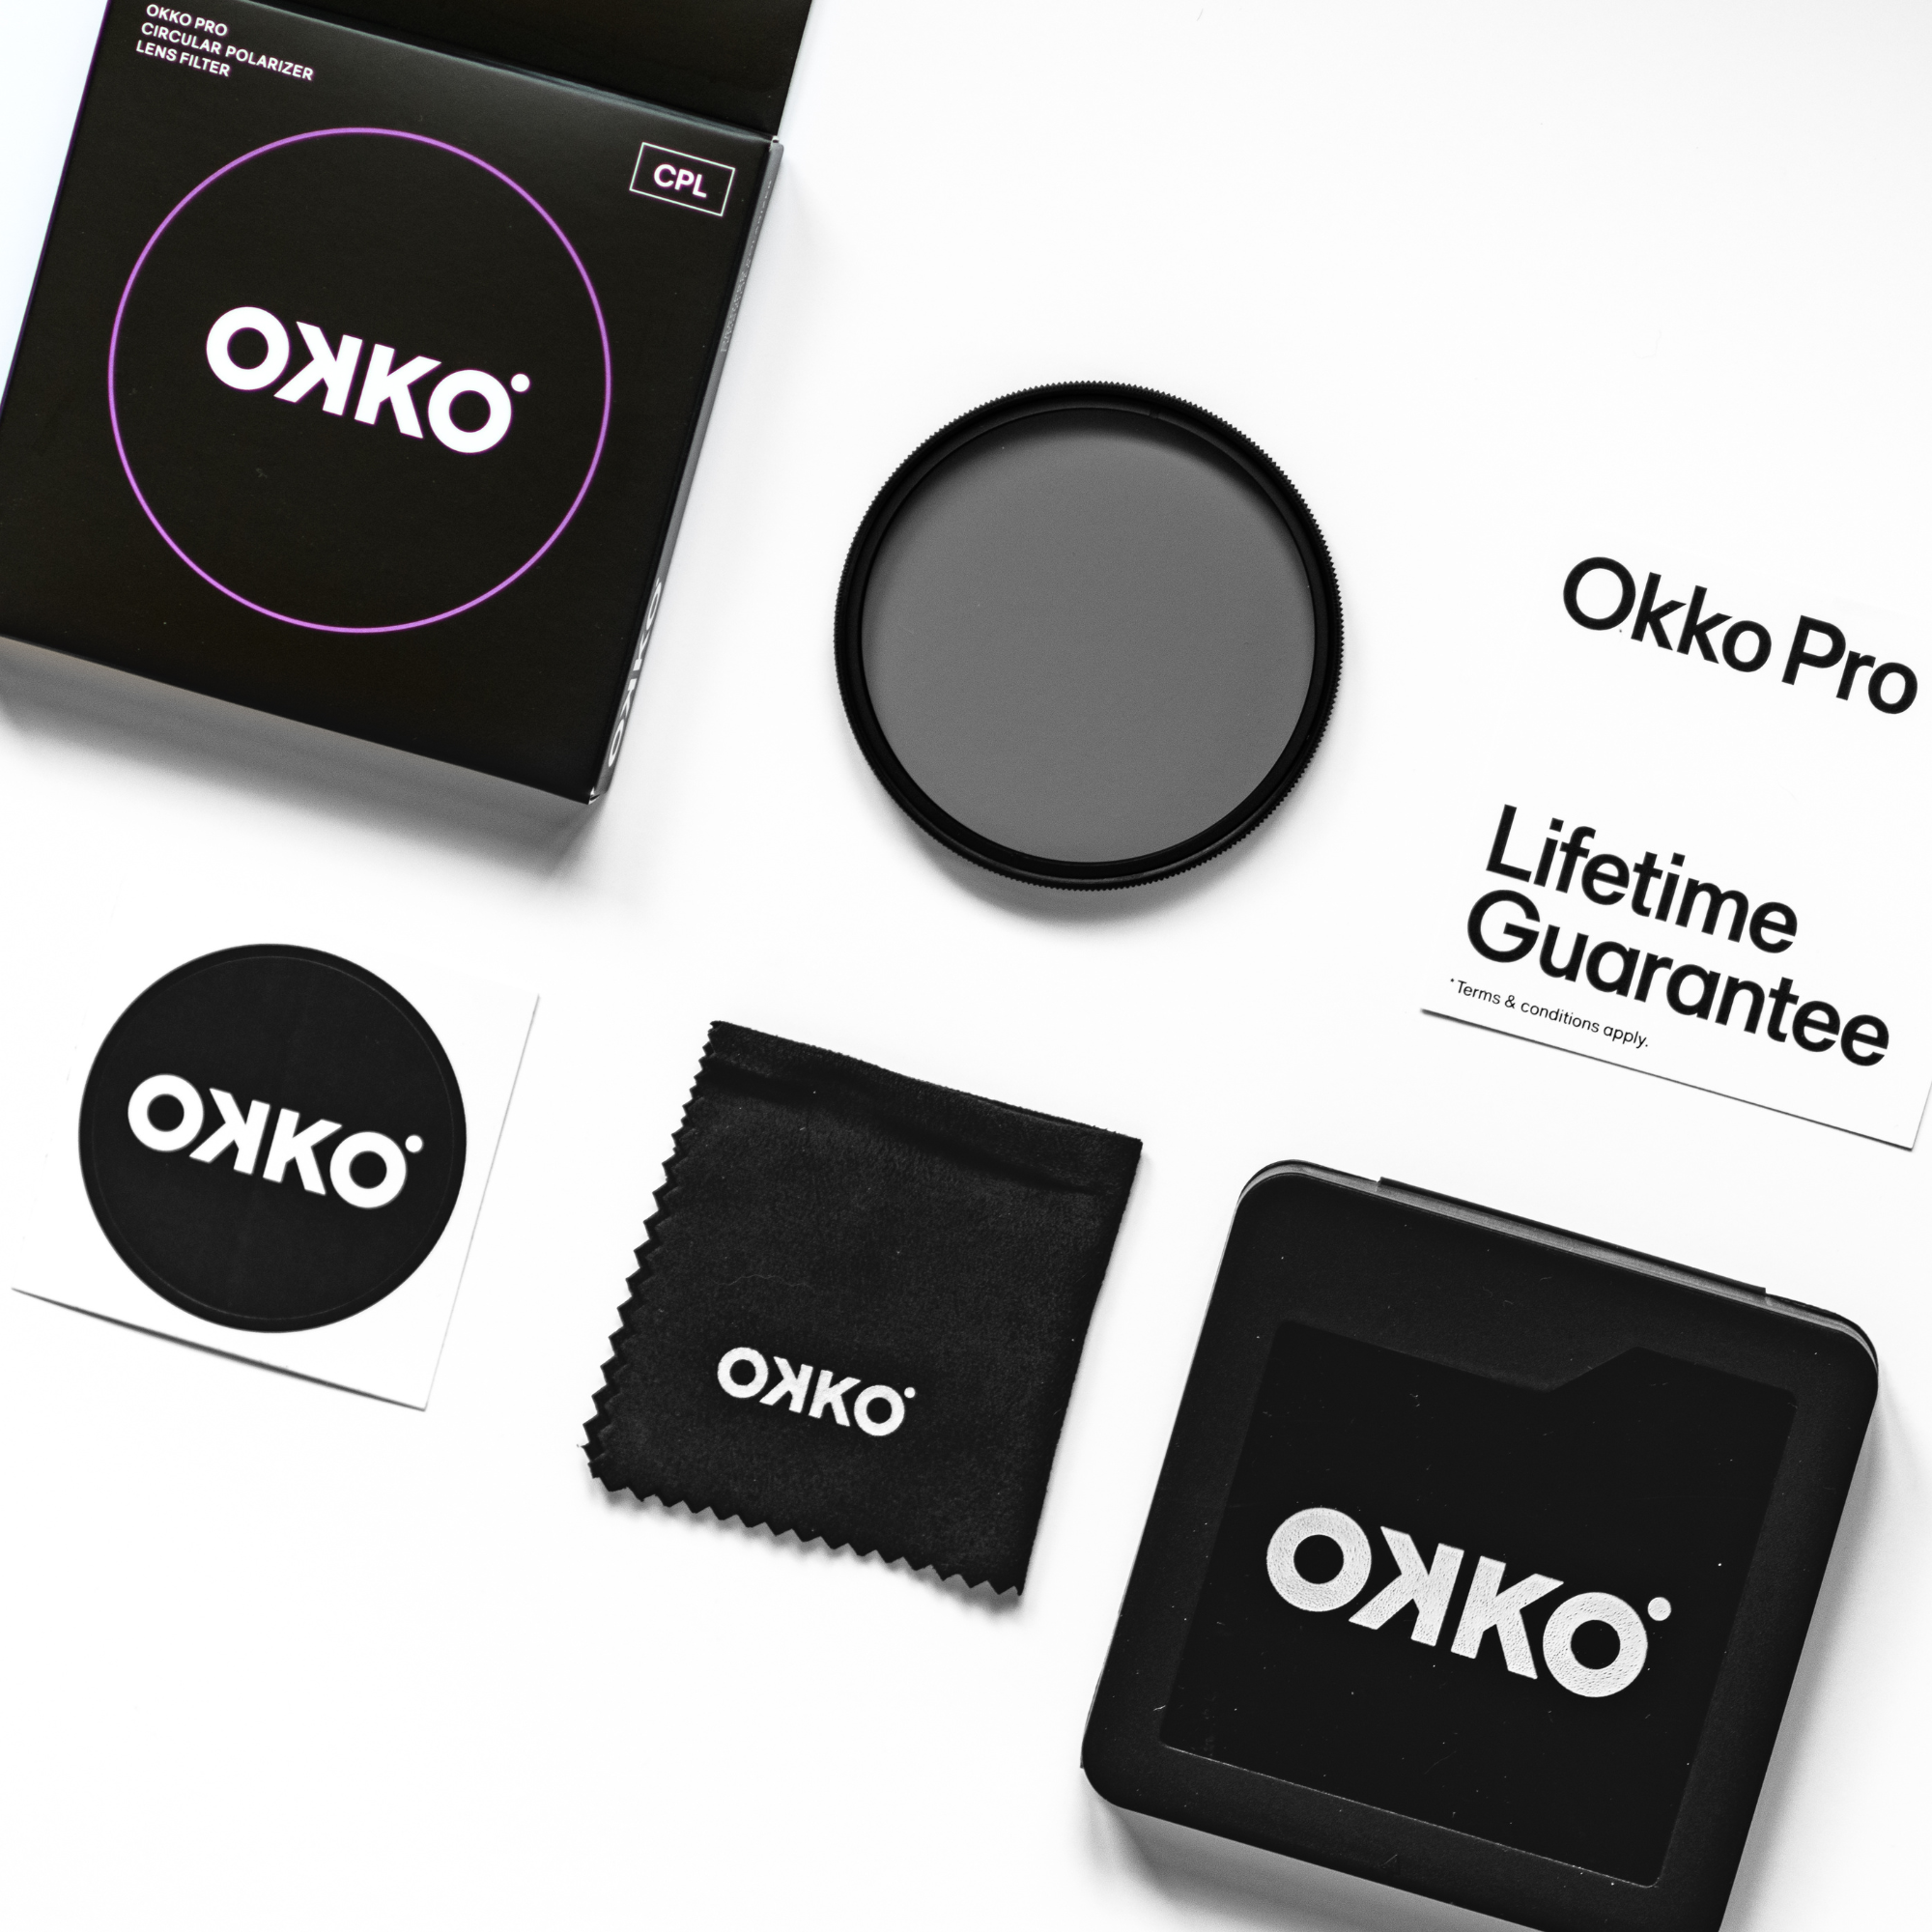 Okko Pro Circular Polarizer Filter